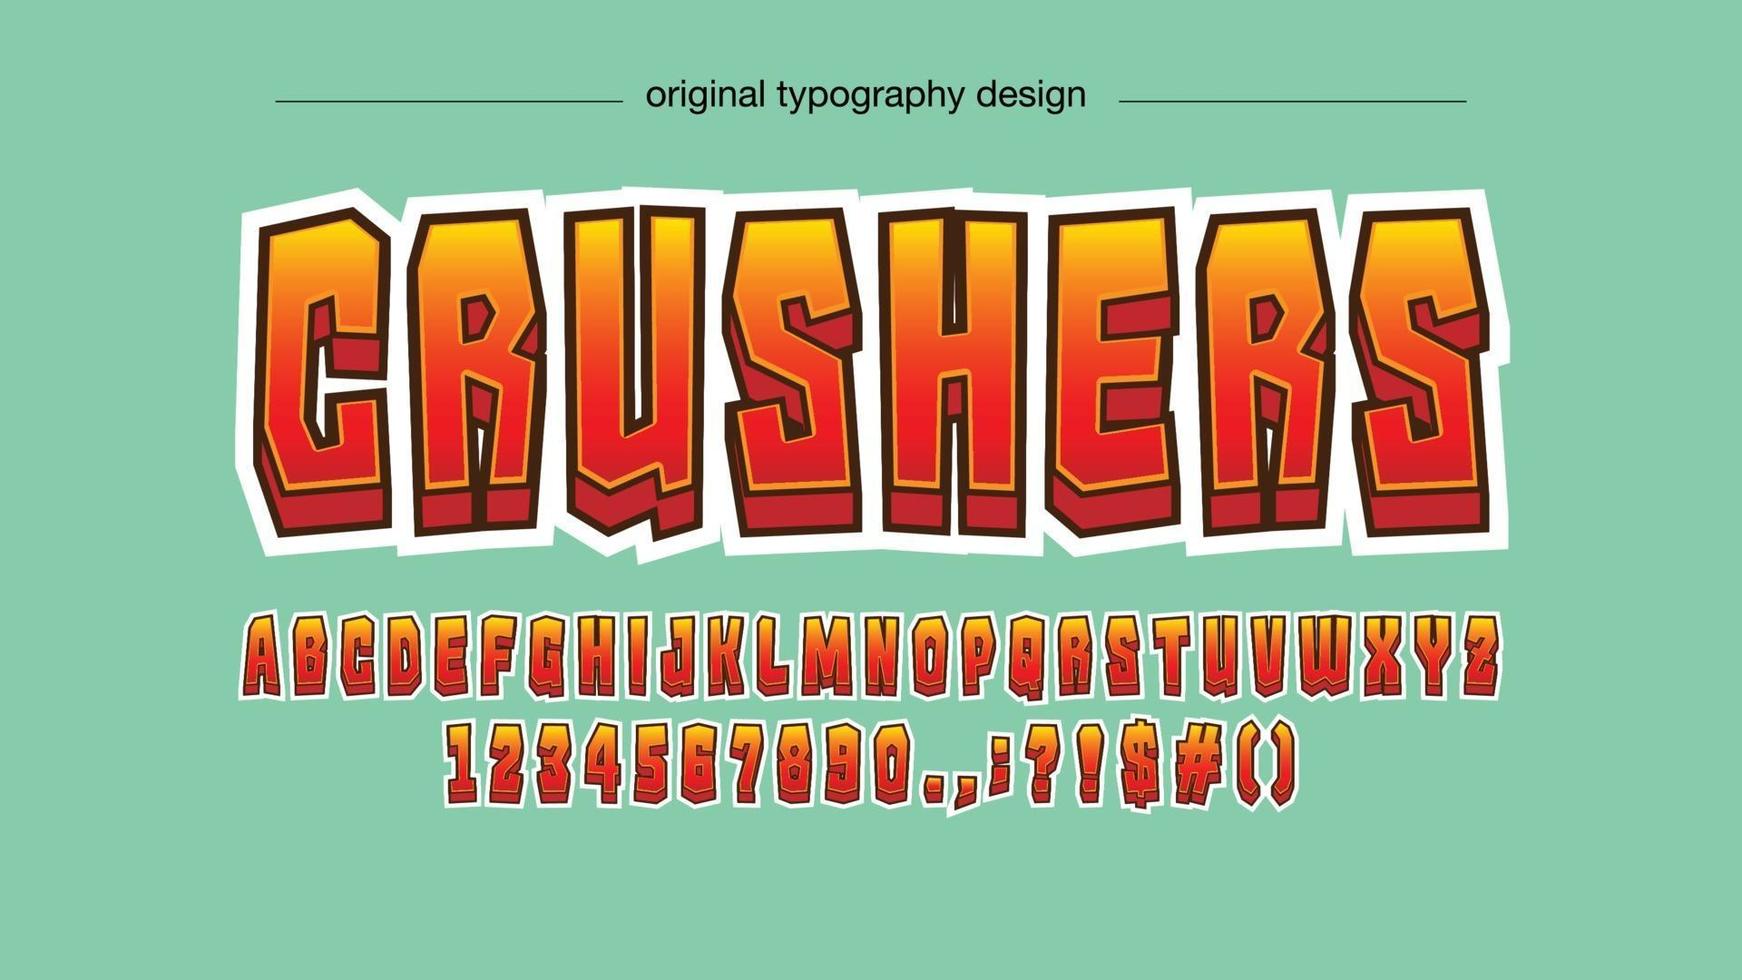 rode moderne cartoon 3D-typografie vector